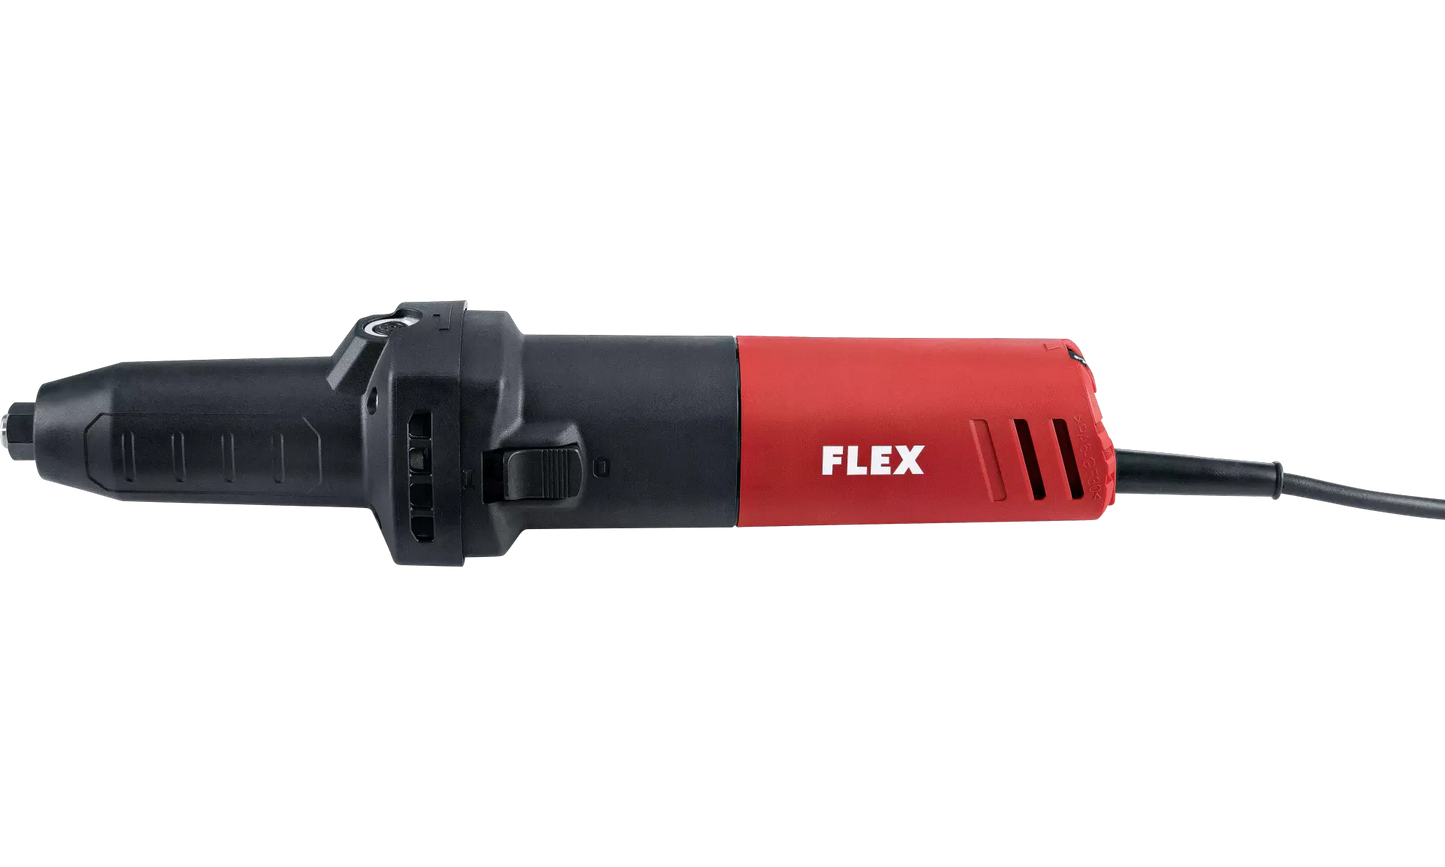 FLEX DGE 8-32 Geradschleifer mit variablem,hohem Drehzahlbereich 800 Watt